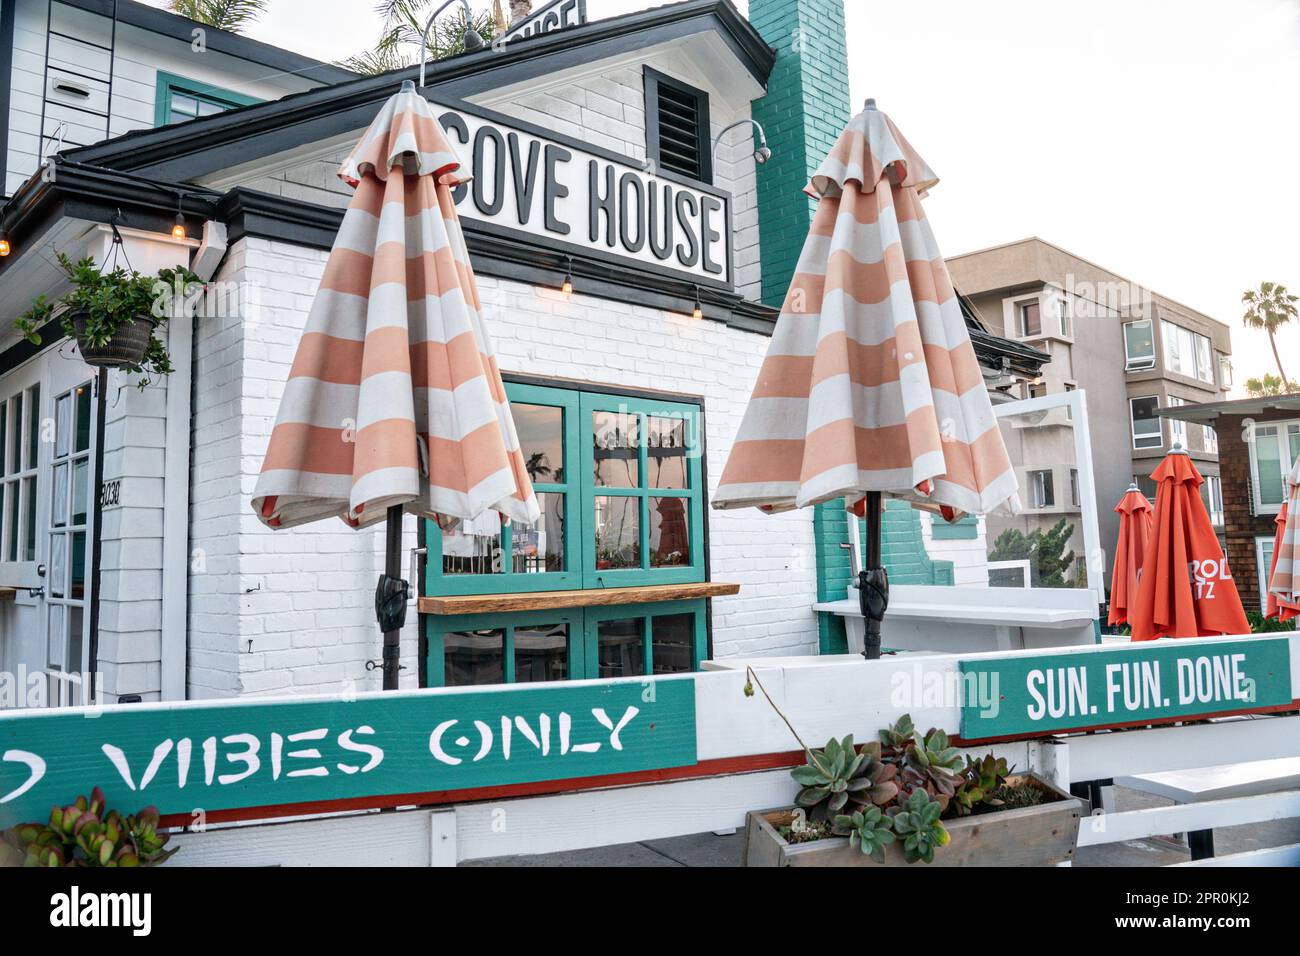 The Cove House restaurant in La Jolla, California. Stock Photo